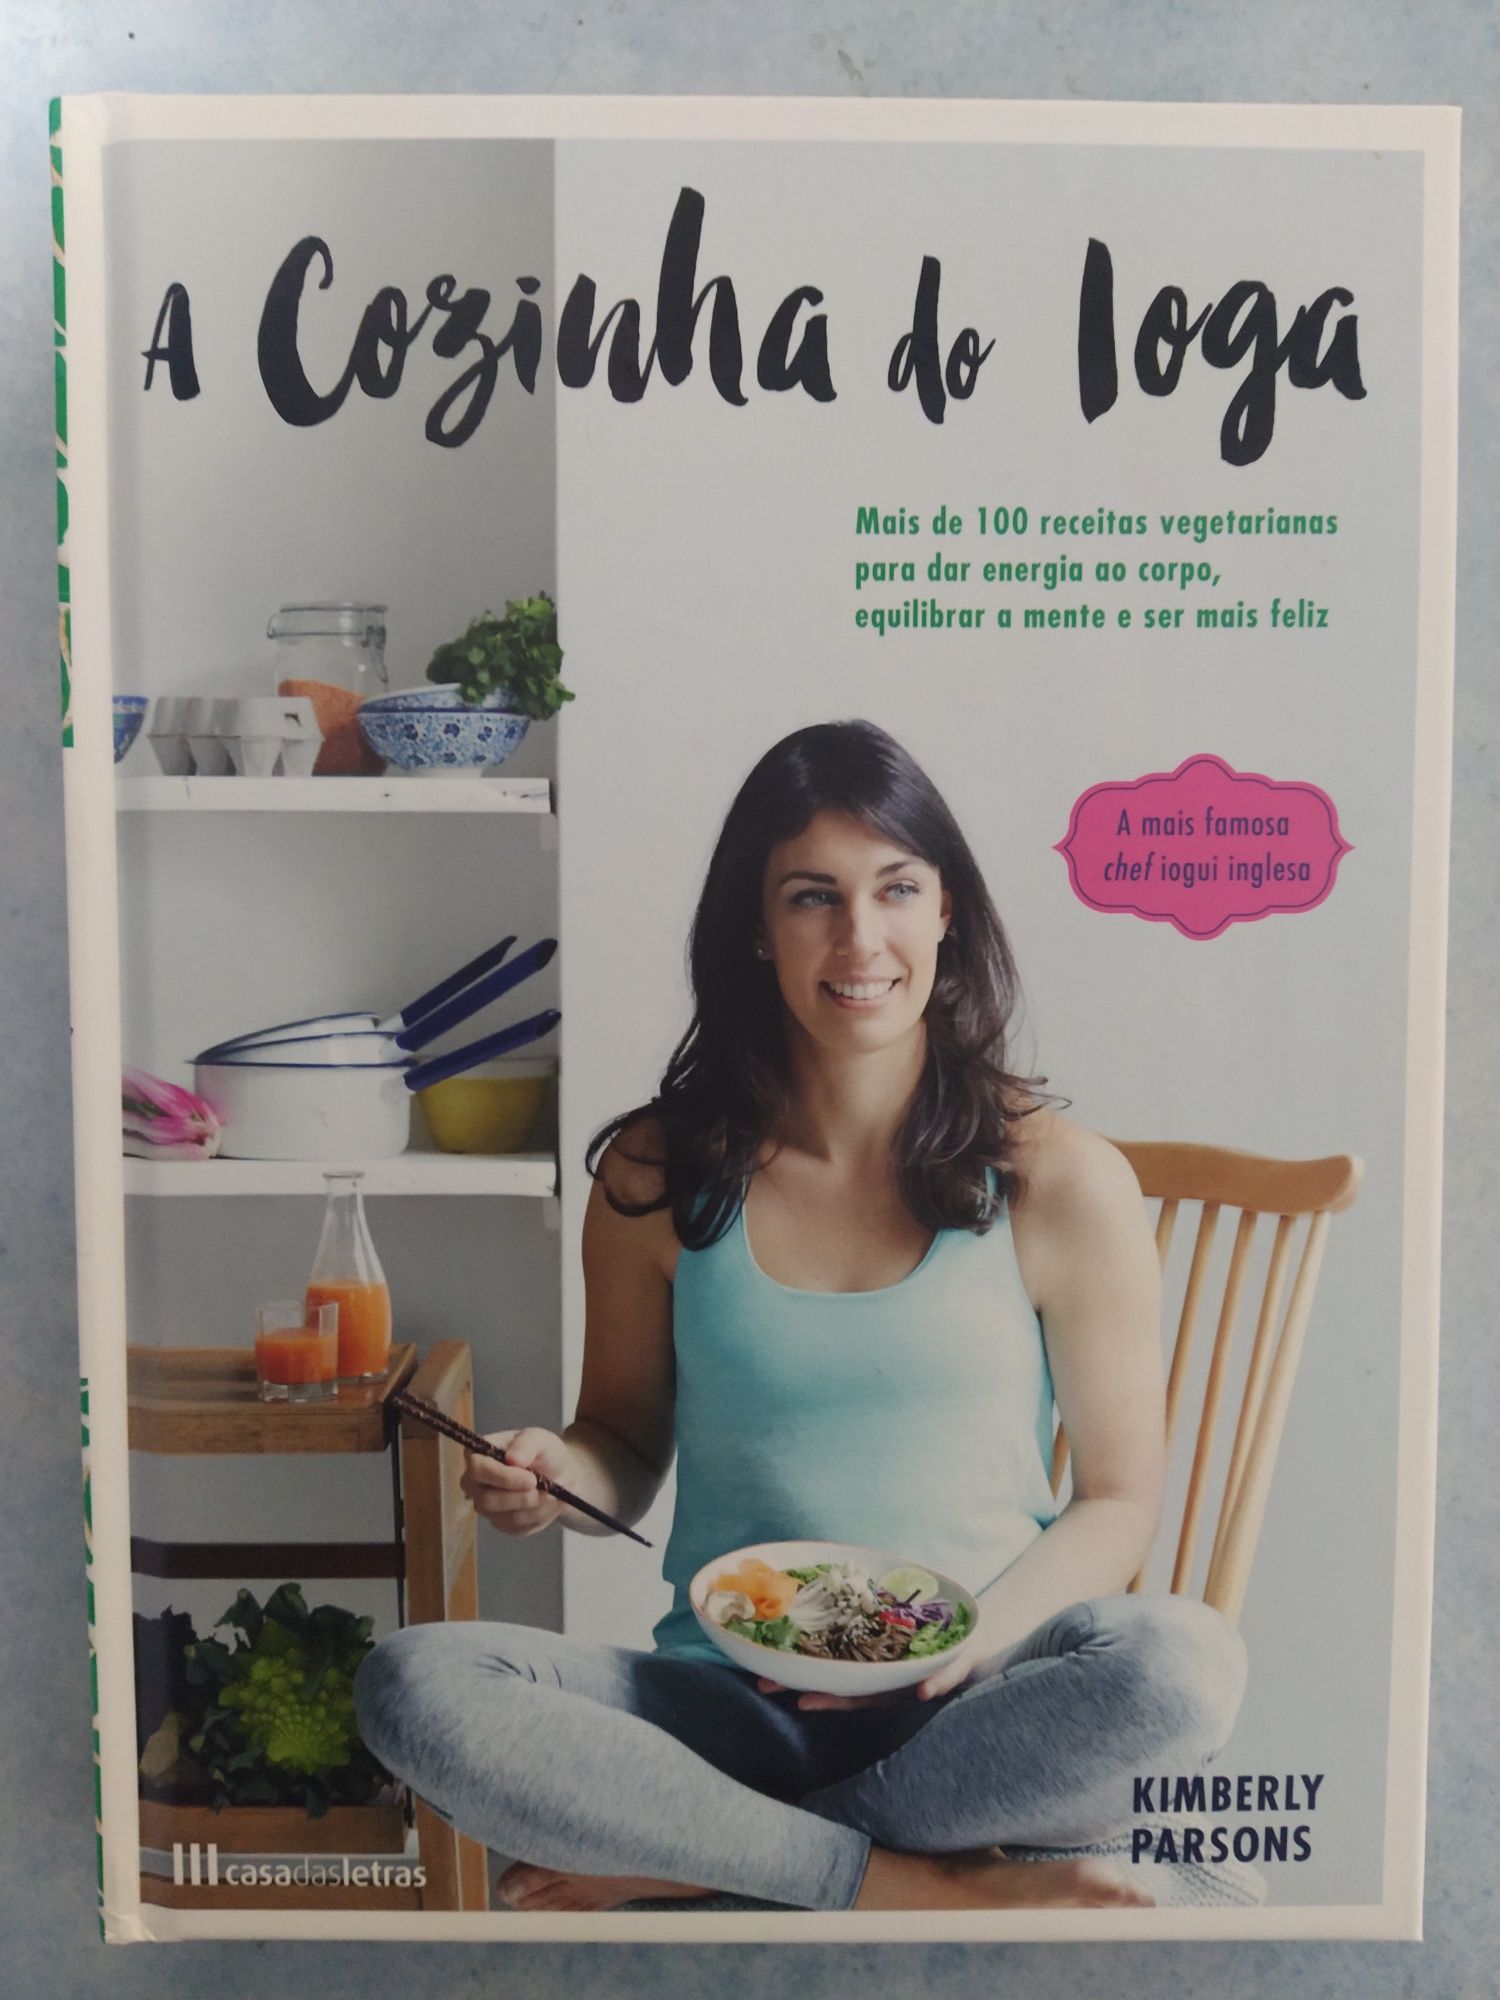 Livro de receitas vegetarianas "A Cozinha do Ioga"